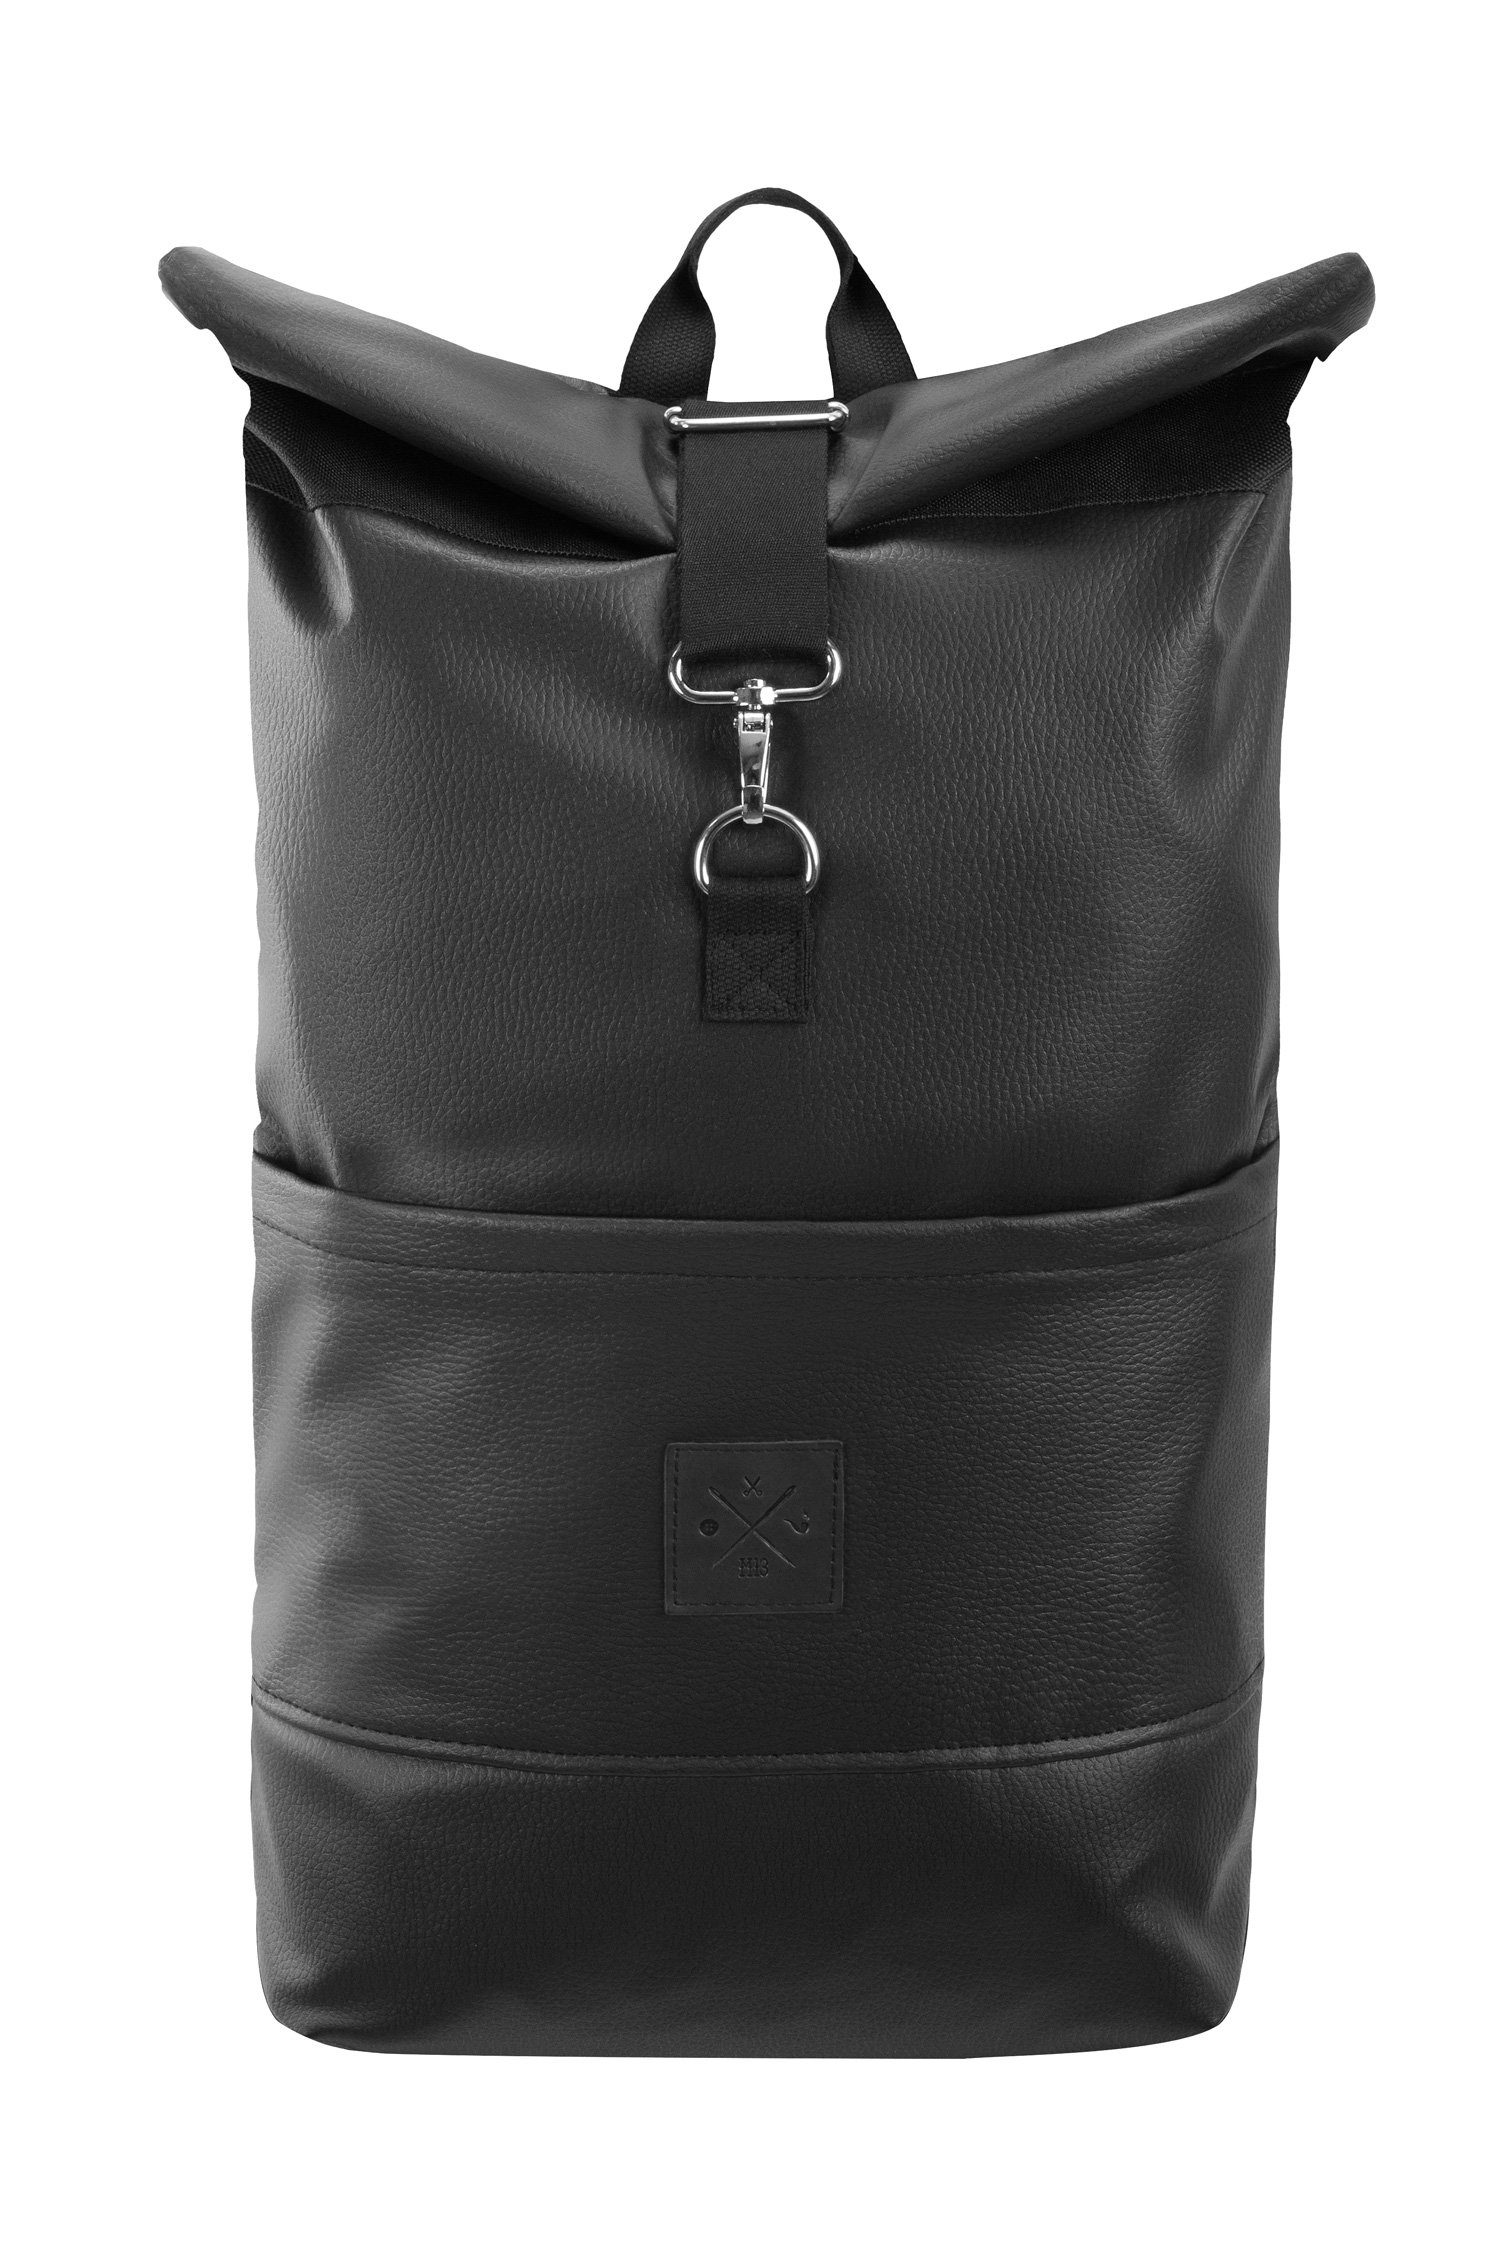 Manufaktur13 Tagesrucksack Roll-Top Backpack - Rucksack mit Rollverschluss, wasserdicht/wasserabweisend, verstellbare Gurte Black Out Vegan Leather